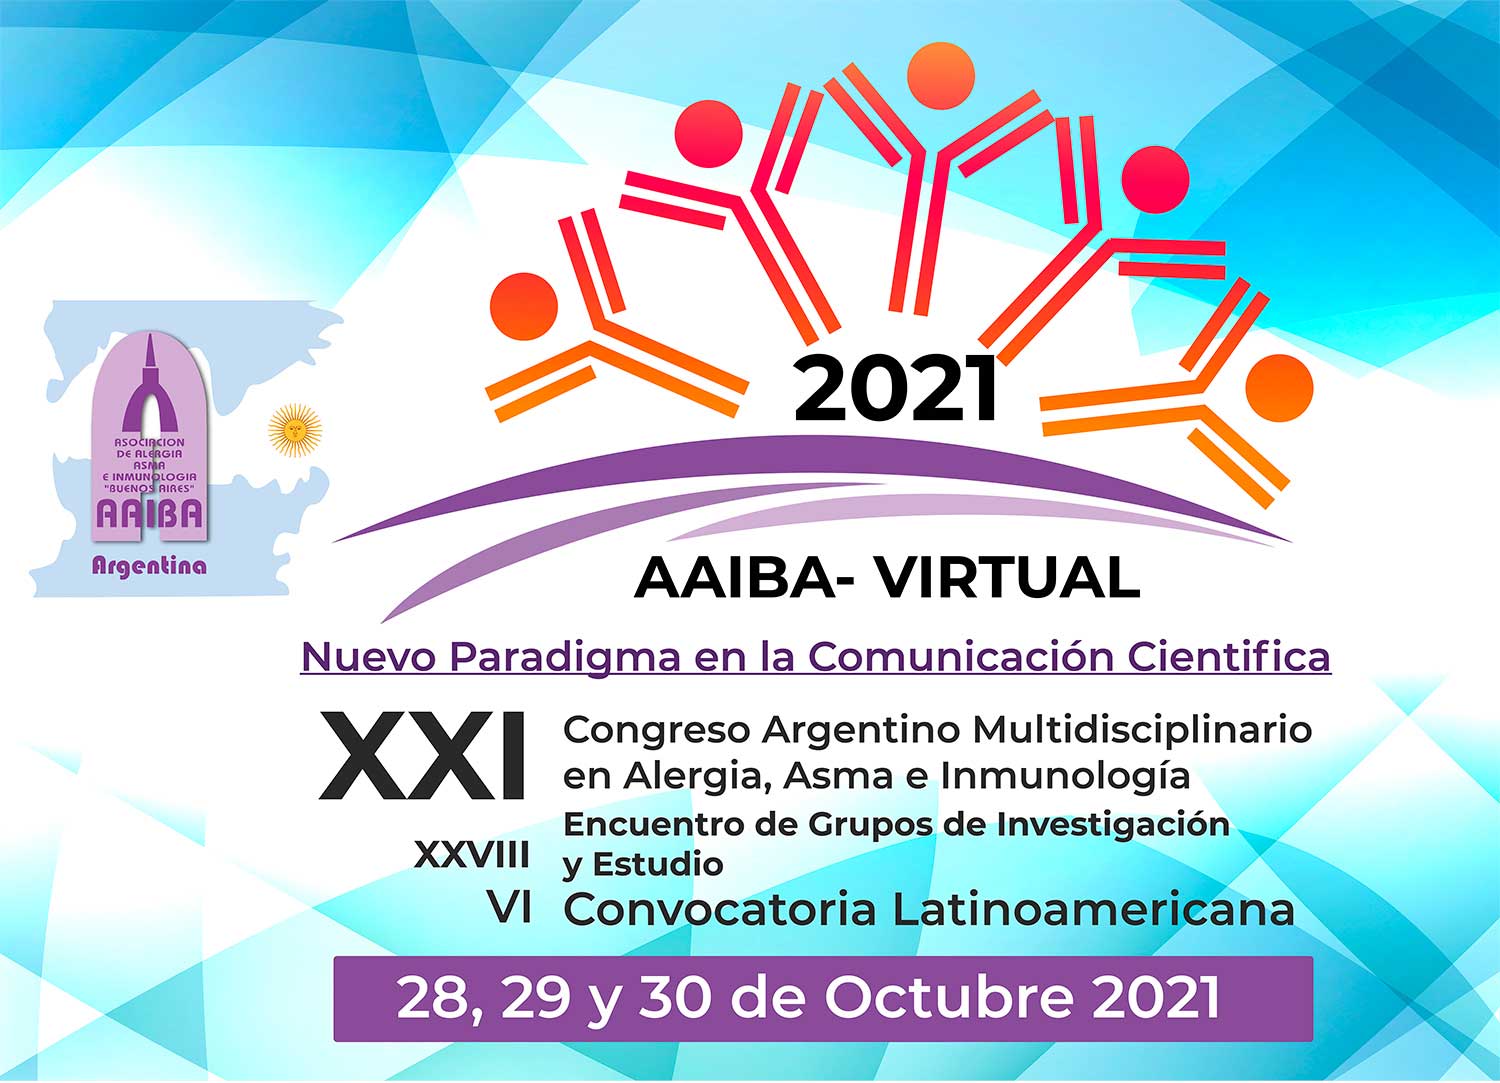 XXI Congreso Argentino Multidisciplinario en Alergia, Asma e Inmunología - AAIBA